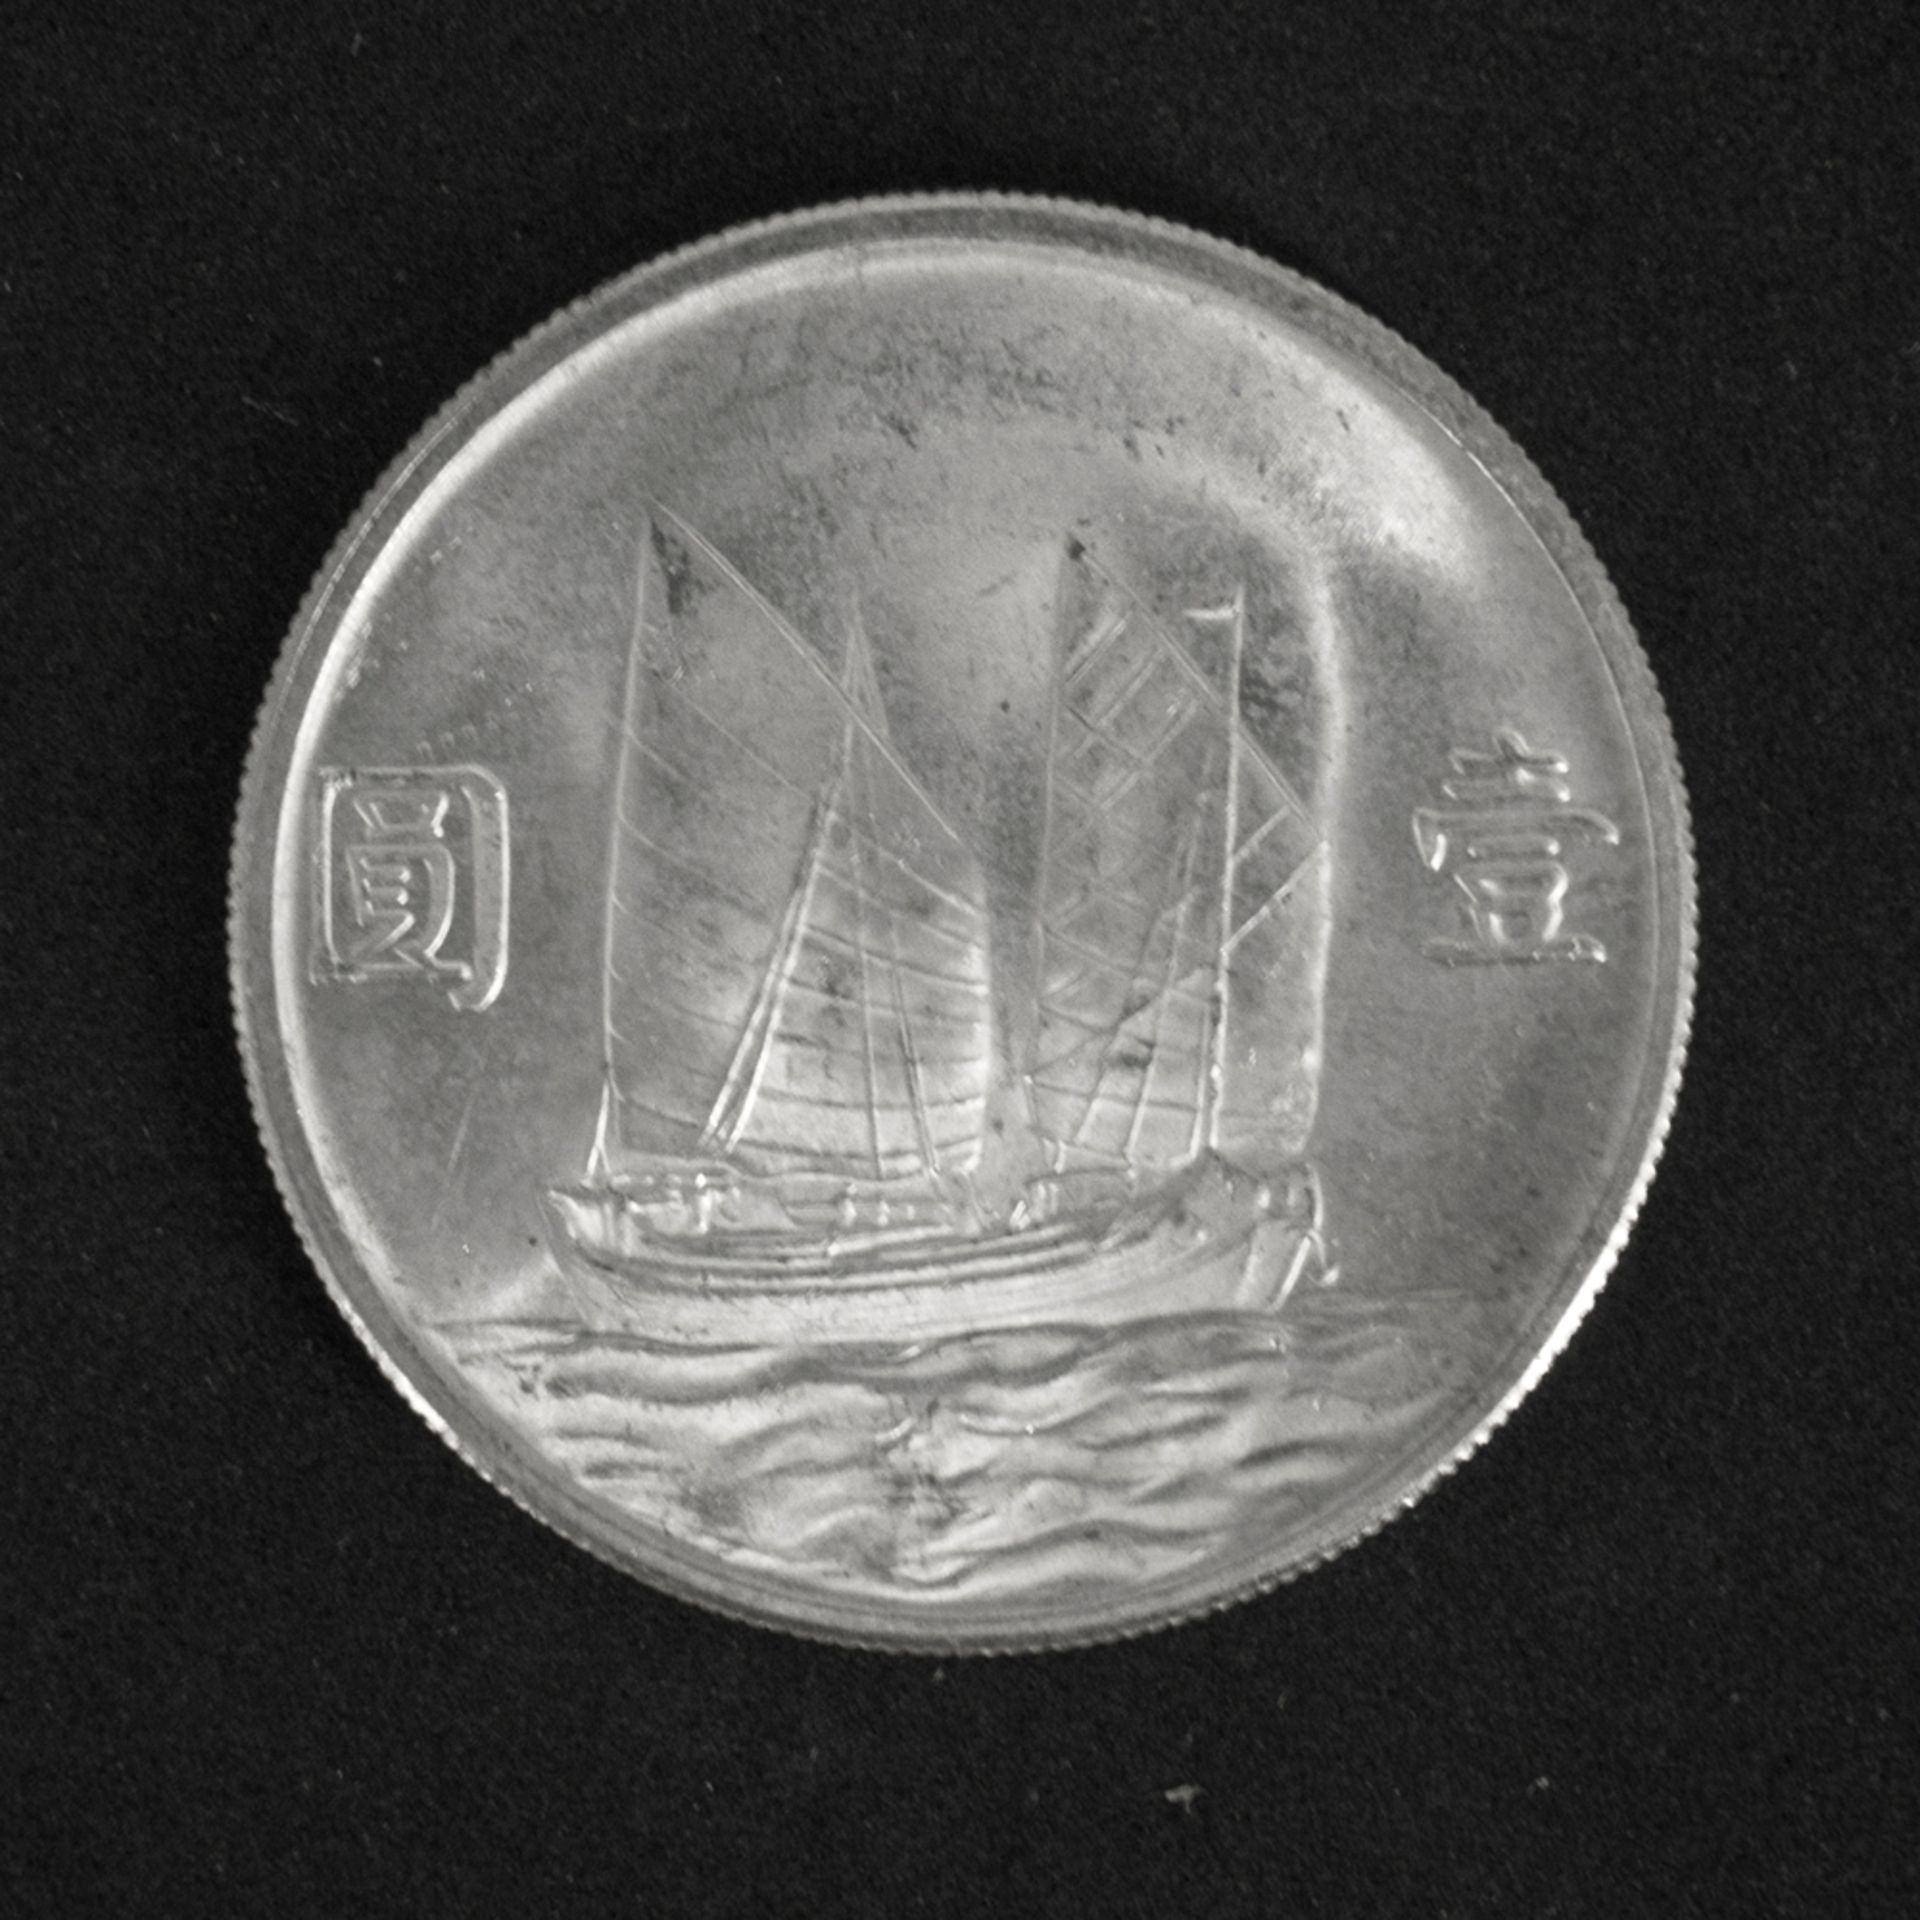 China Republik, 1 Dollar "Dr. Sun Yat Sen - Dschunke". Silber. Erhaltung: vz. - Image 2 of 2